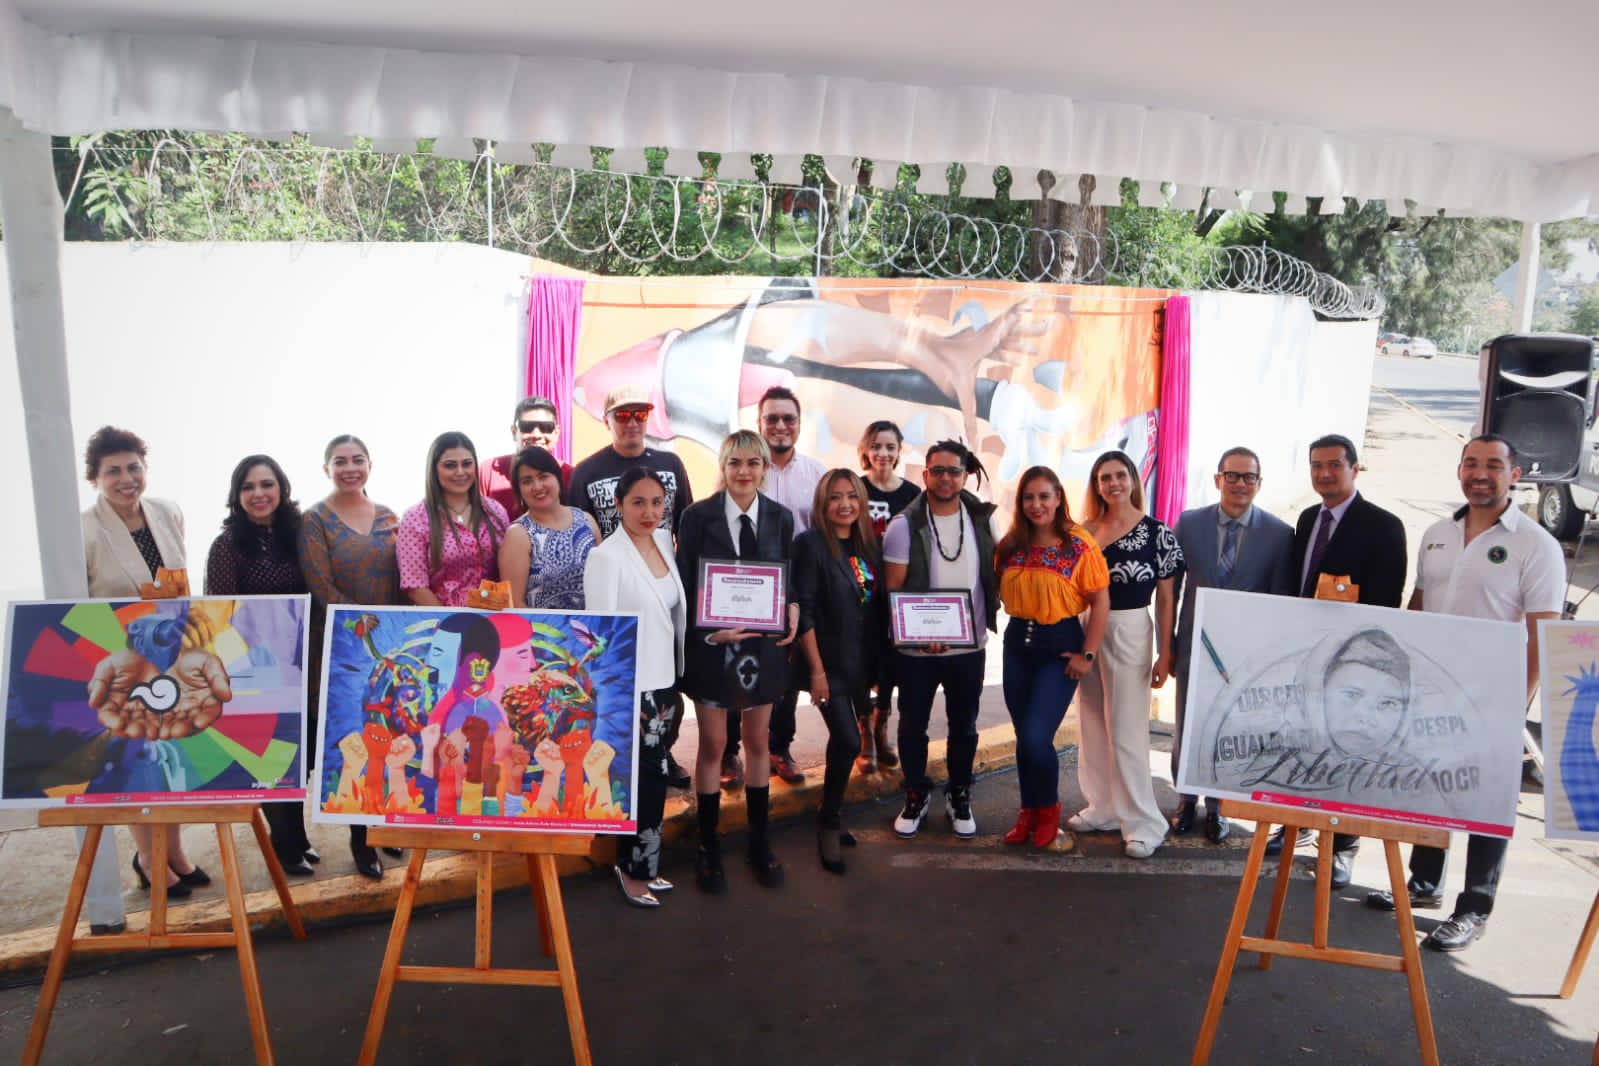 OPLE Veracruz enaltece a la Democracia a través del concurso de arte urbano “Pinta una Vida Democrática”